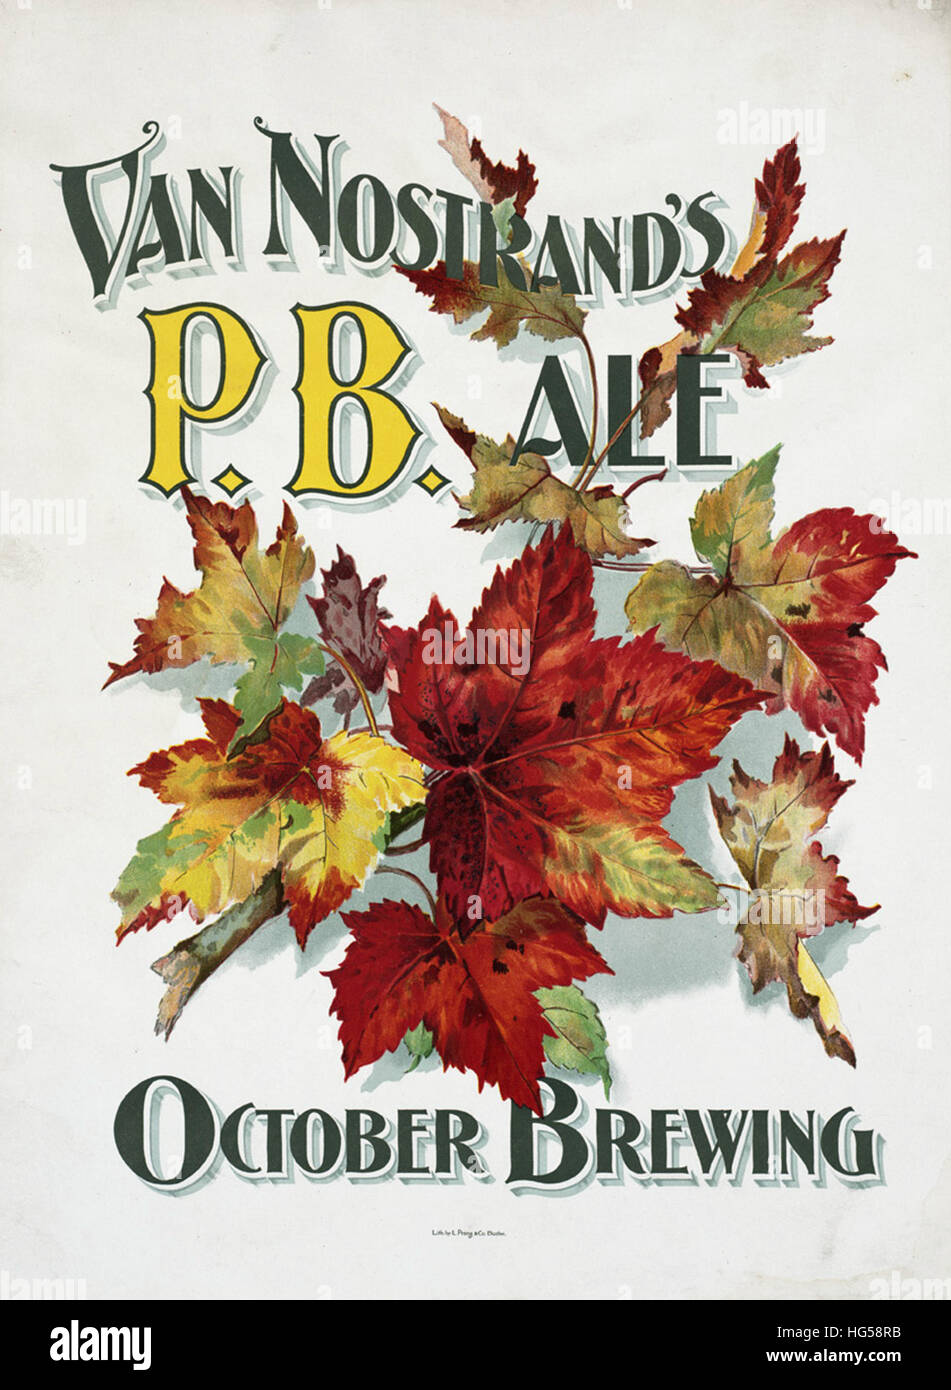 Birreria di Boston Posters - Van Nostrand's P.B. ale. Ottobre la produzione di birra Foto Stock